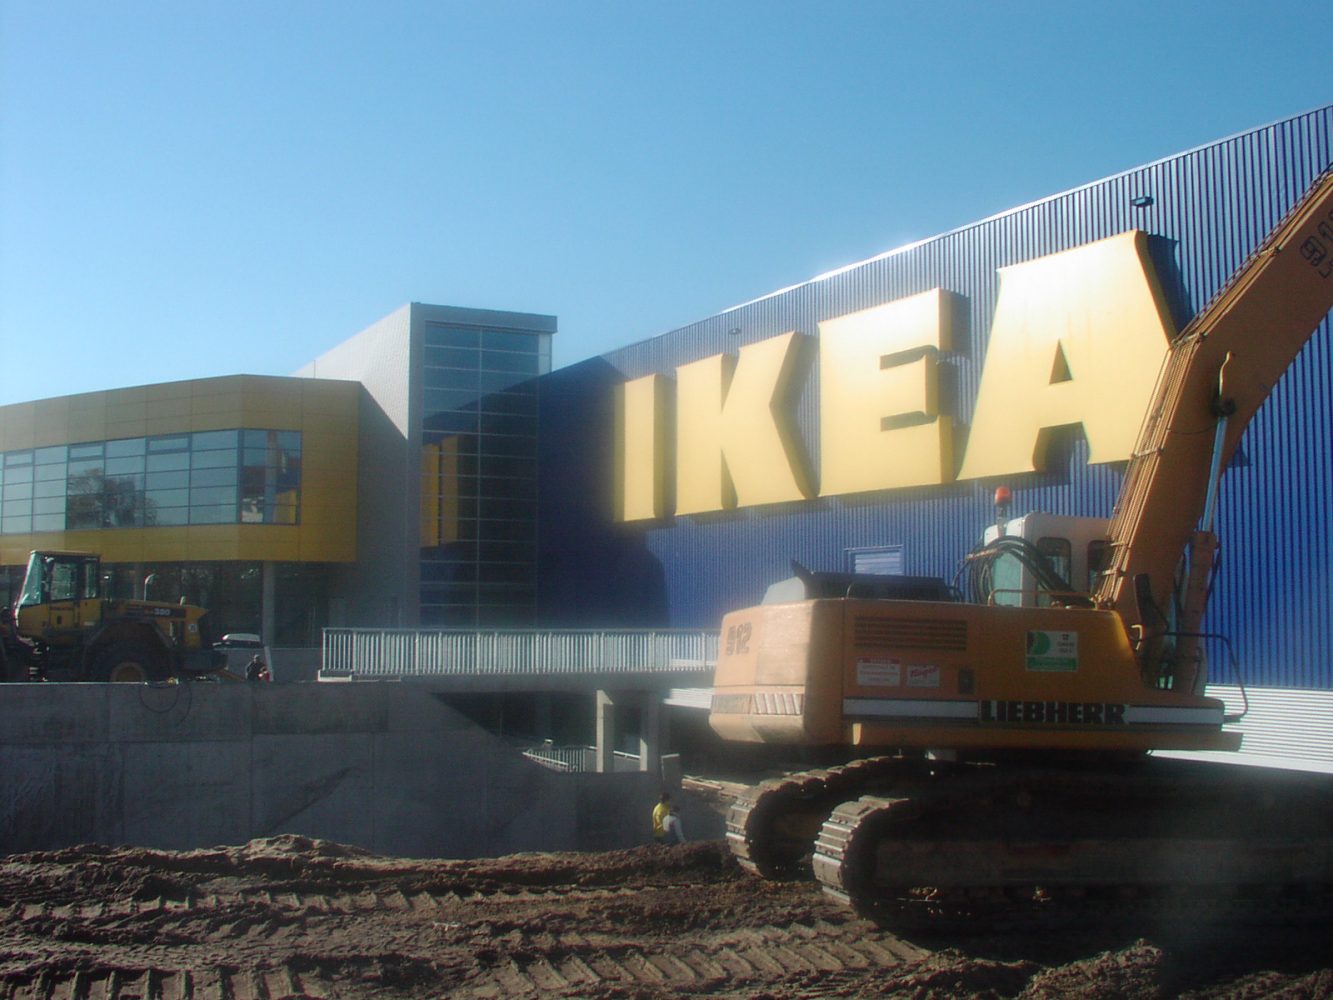 Projekt IKEA Berlin Tempelhof